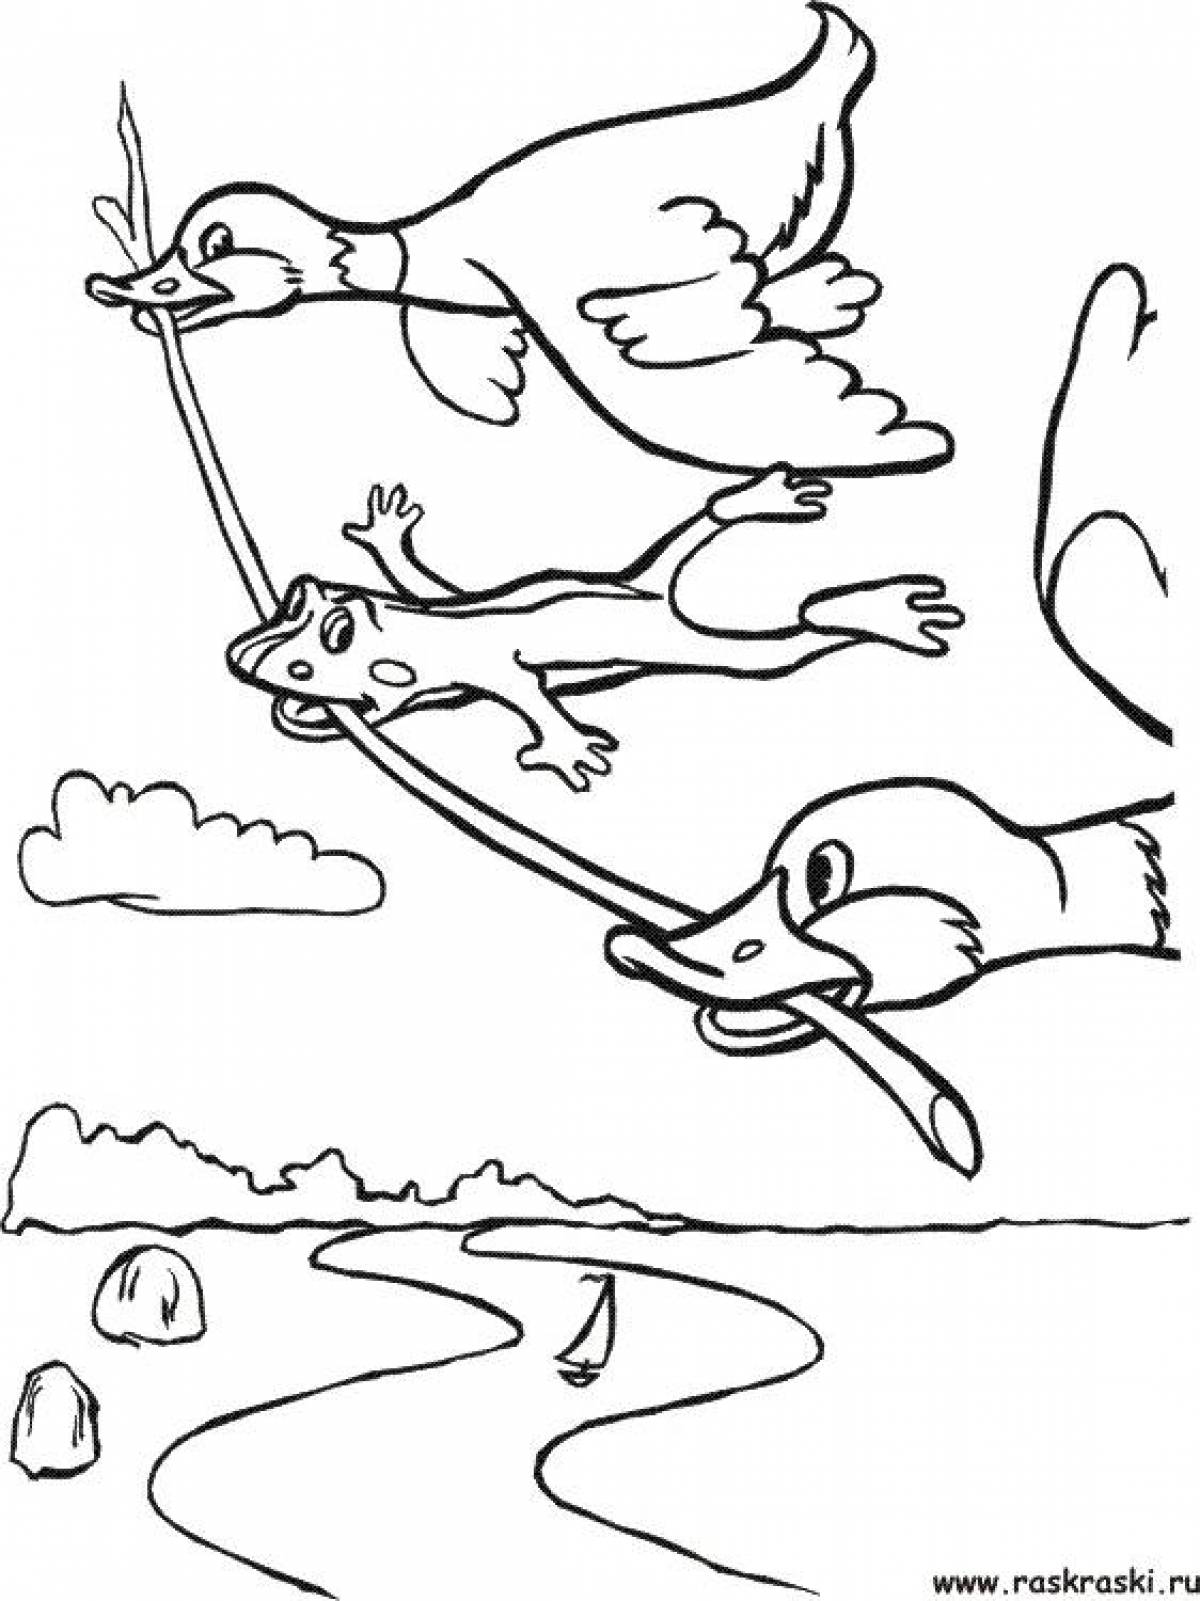 Иллюстрация к сказке лягушка путешественница